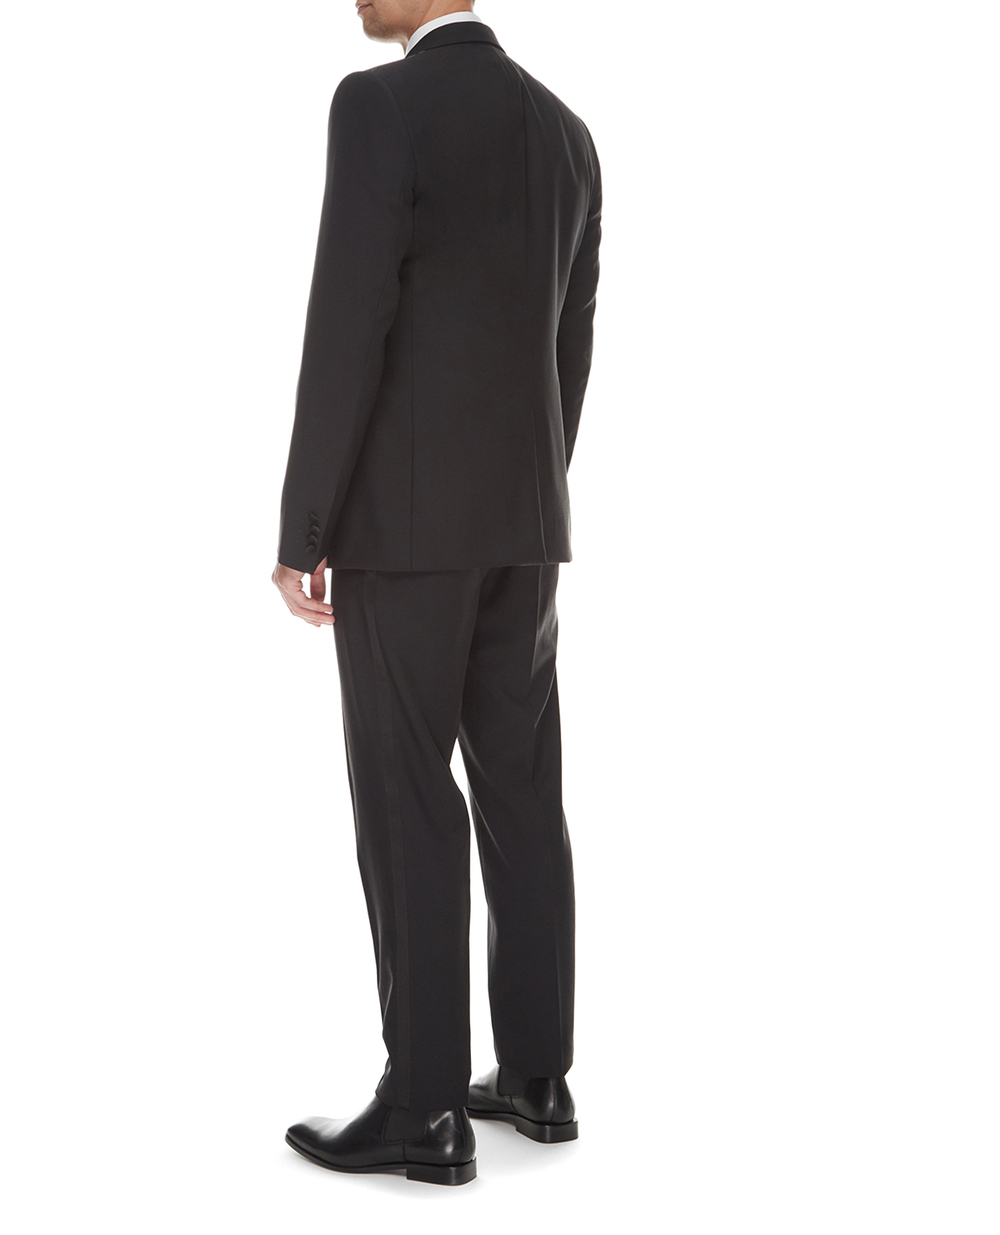 Шерстяной костюм Martini (пиджак, жилет, брюки) Dolce&Gabbana GK2WMT-FU2Z8, черный цвет • Купить в интернет-магазине Kameron